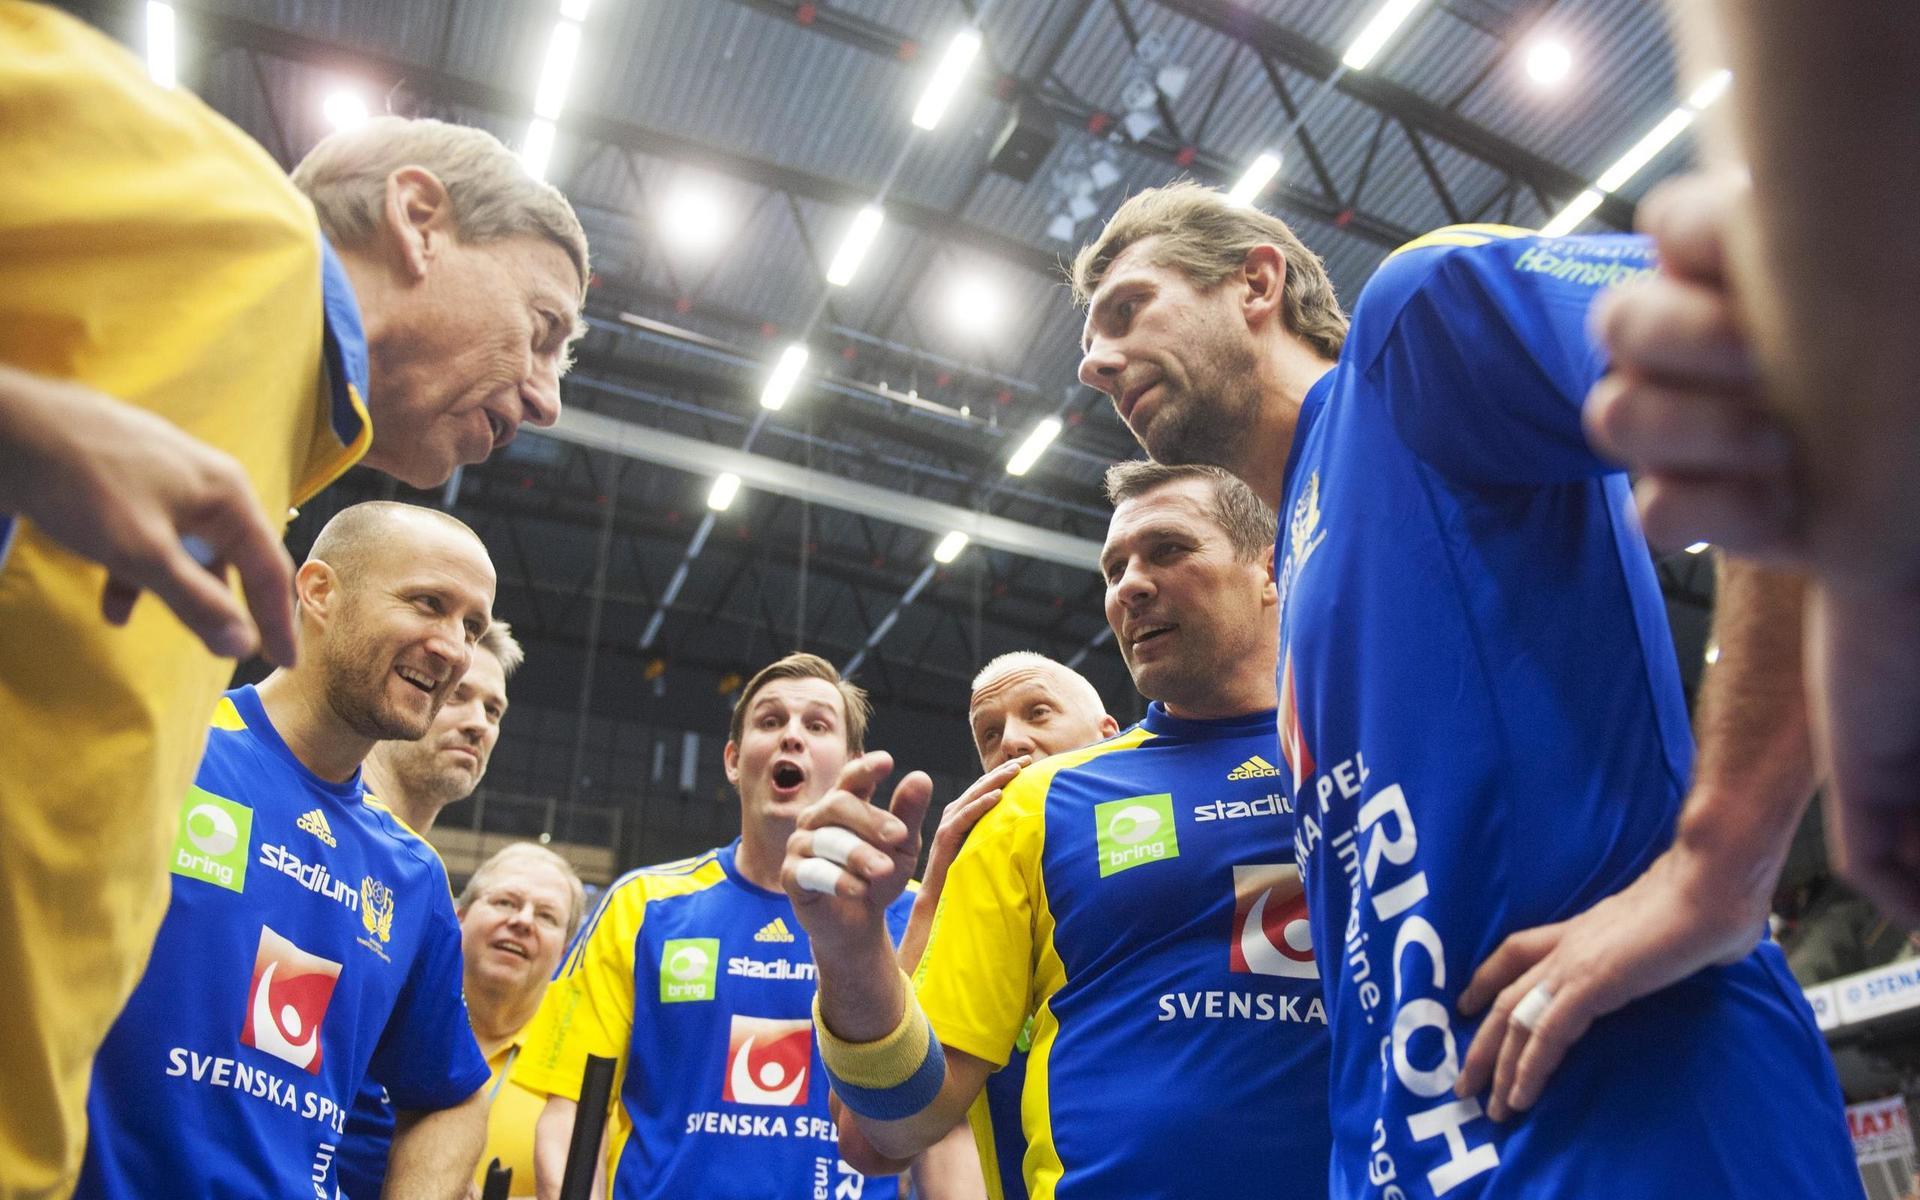 Timeout i slutet av matchen och Bengt Johansson hyllades av sina boys, här Stefan Lövgren och Magnus Wislander i matchen mellan Bengan Boys och Världslaget i Halmstad 11 januari 2014.